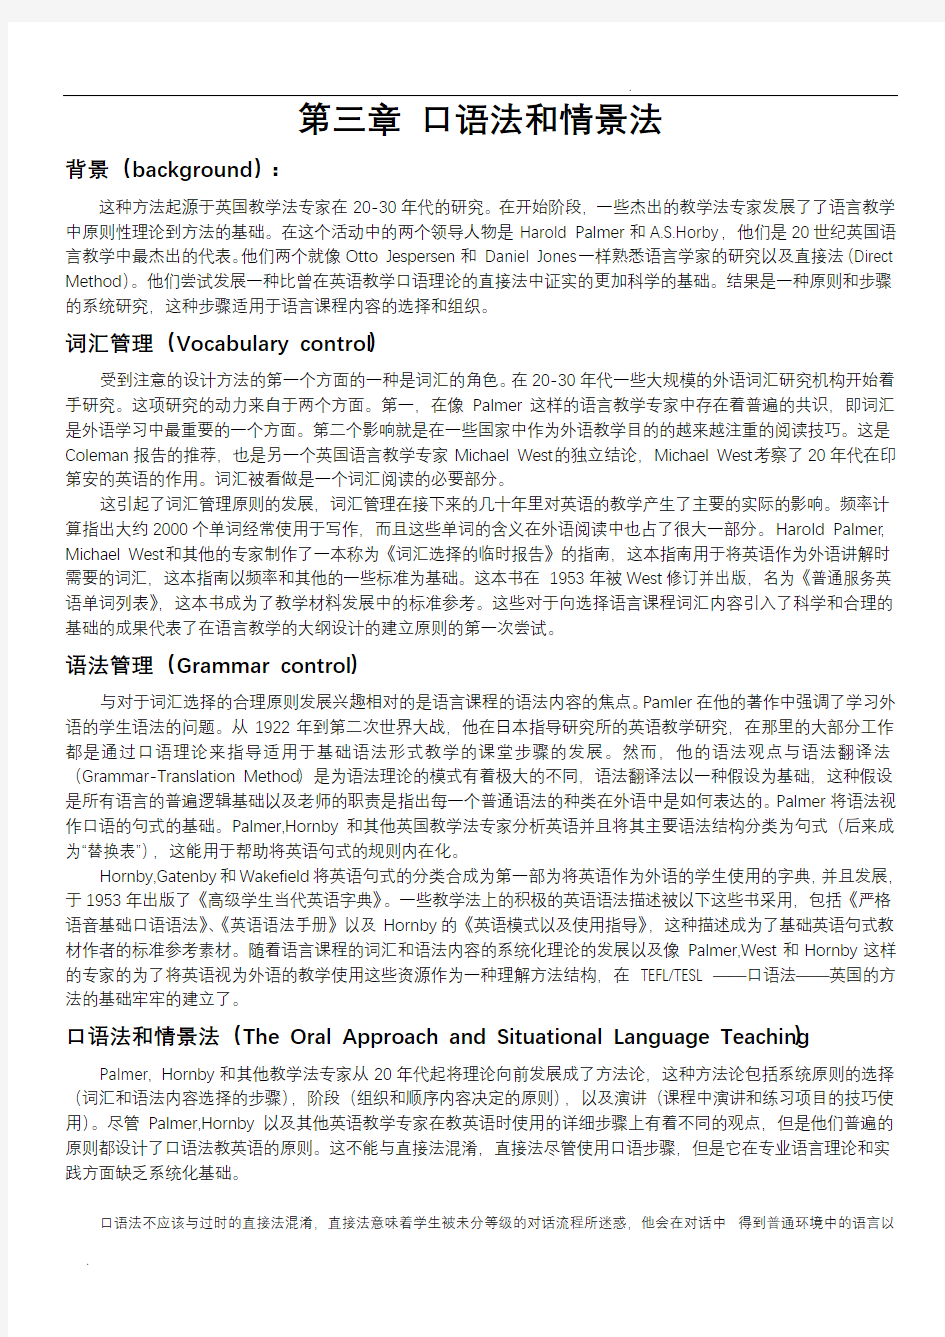 外语教学流派中文翻译(打印版)